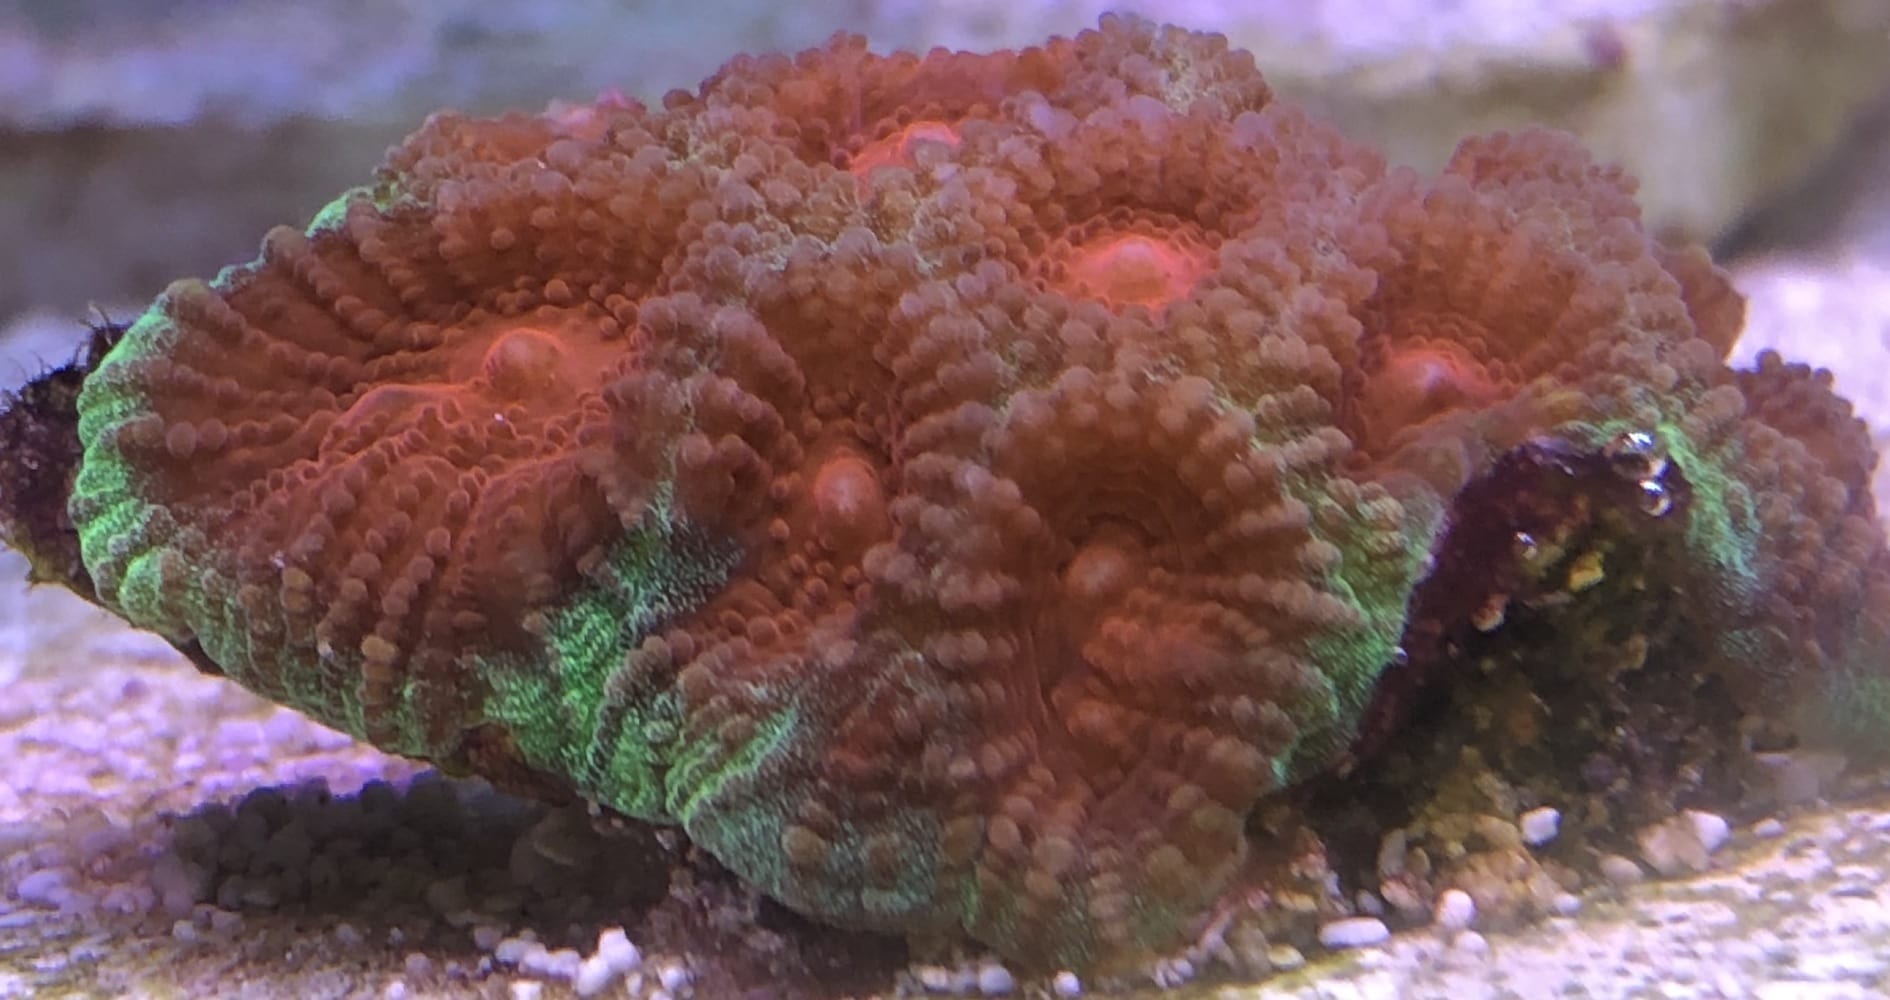 War coral Favia